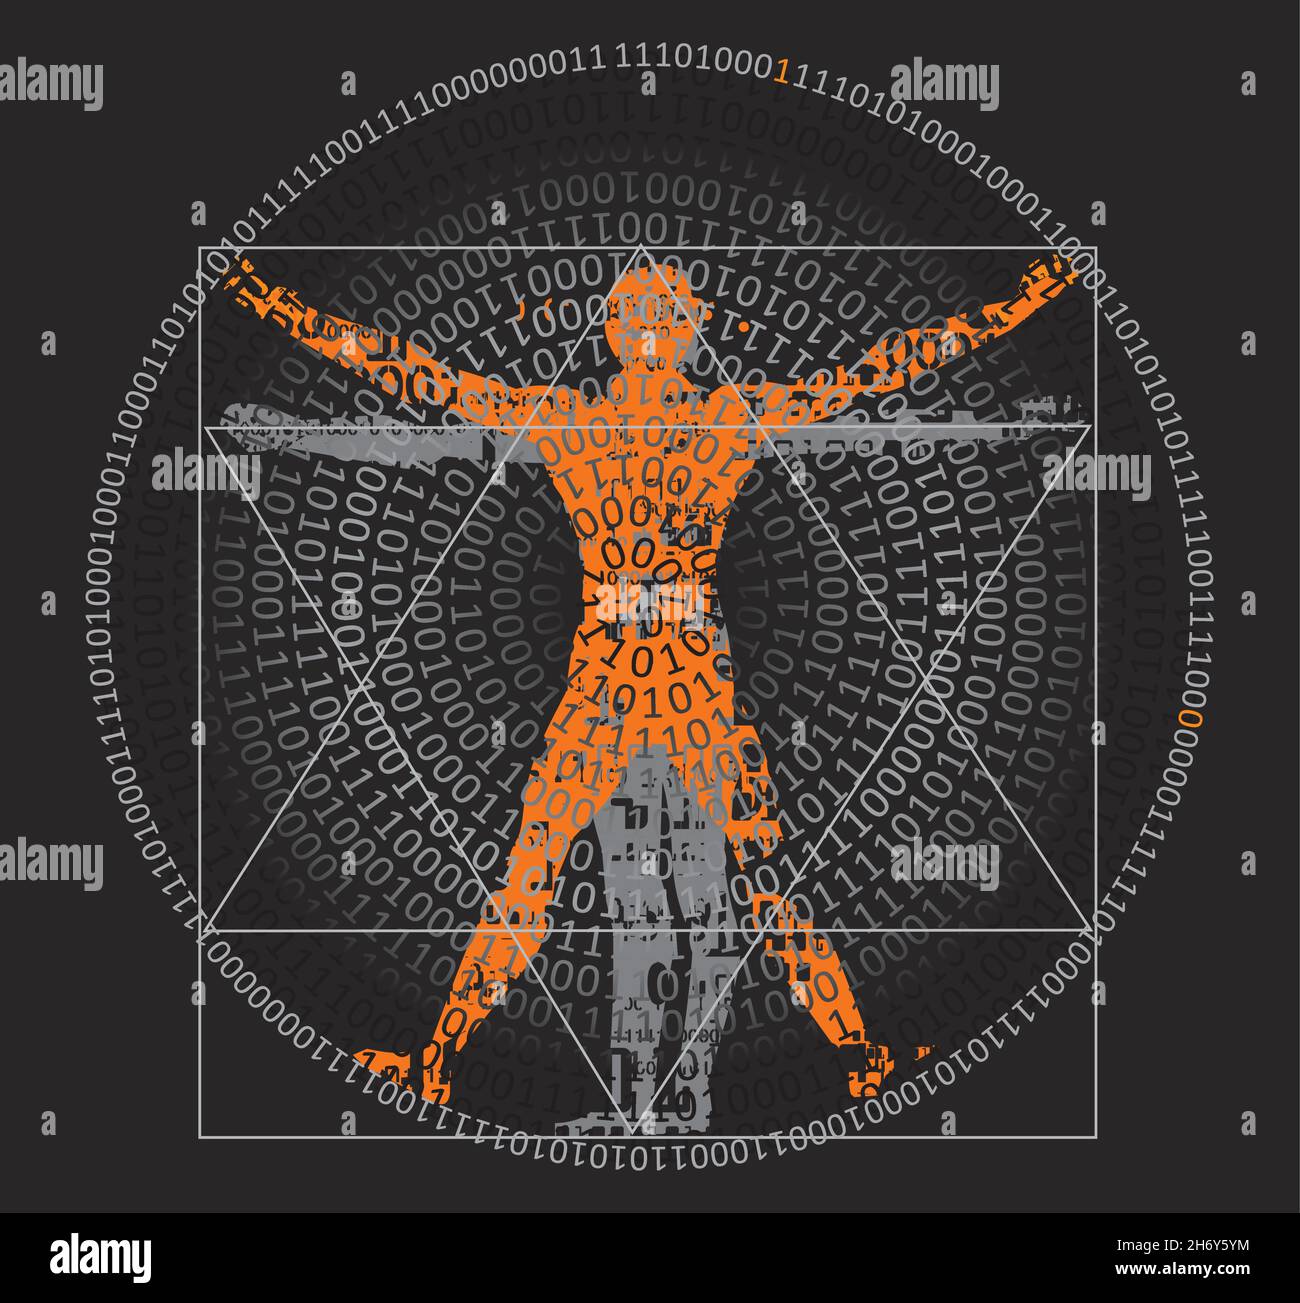 Uomo vitruviano con codice binario, concetto di età digitale.disegno stilizzato di uomo vitruviano con spirale di codici binari su sfondo nero.Vector disponibile Illustrazione Vettoriale